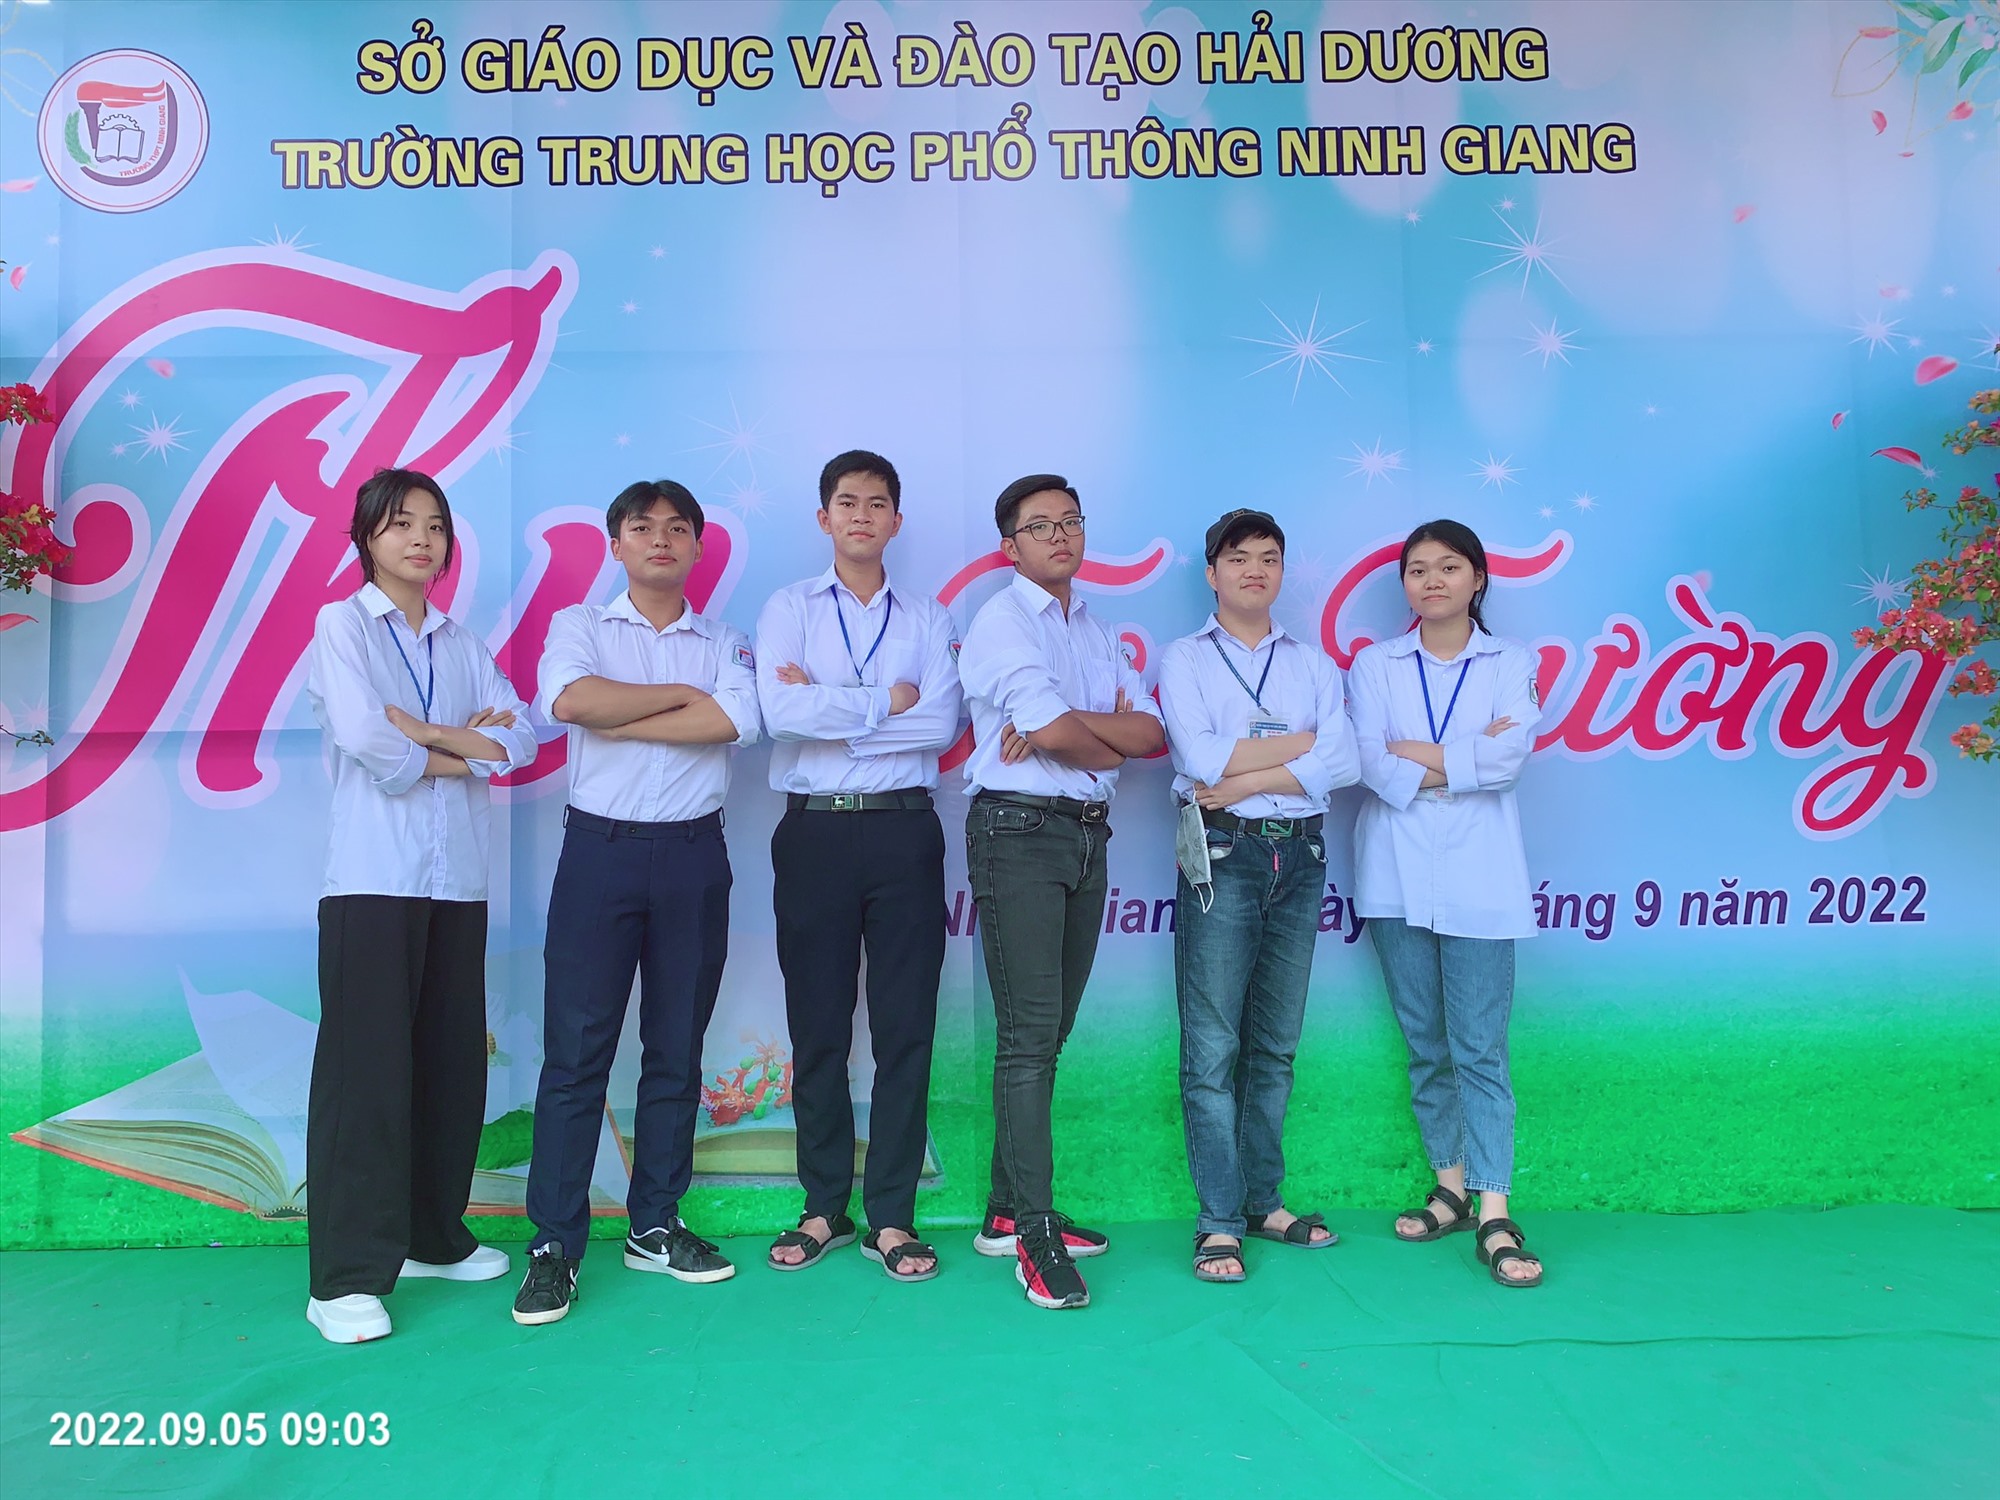 Đặng Quang Vinh (thứ 3 từ trái sang phải) chụp ảnh lưu niệm cùng bạn bè ngày tựu trường. Ảnh: Nhân vật cung cấp